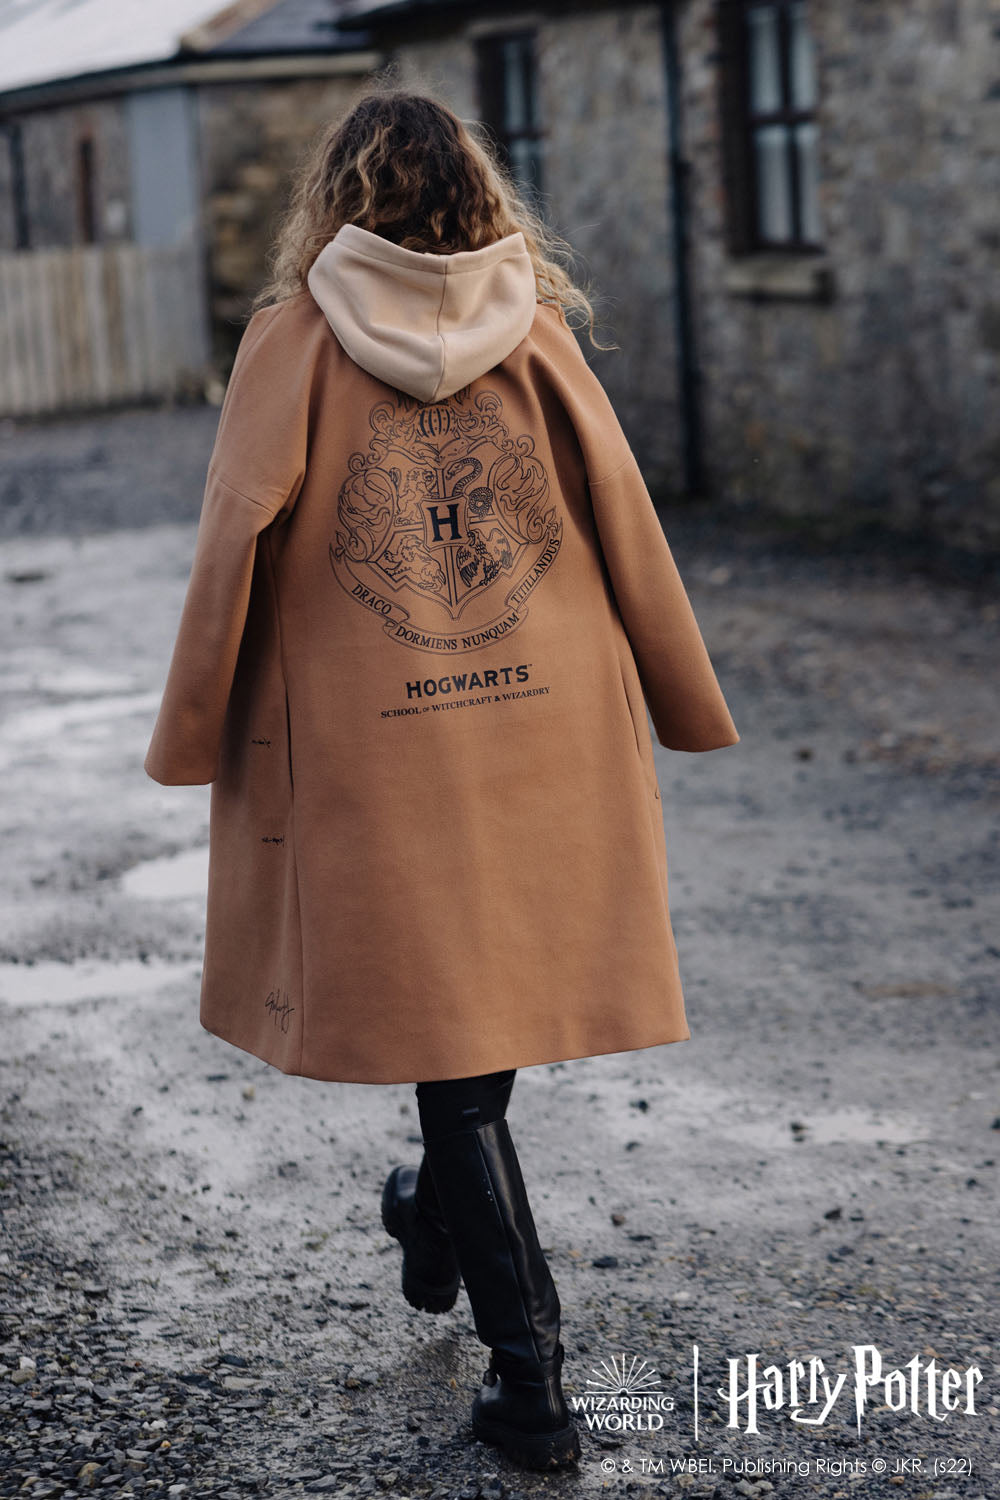 Hogwarts classic coat